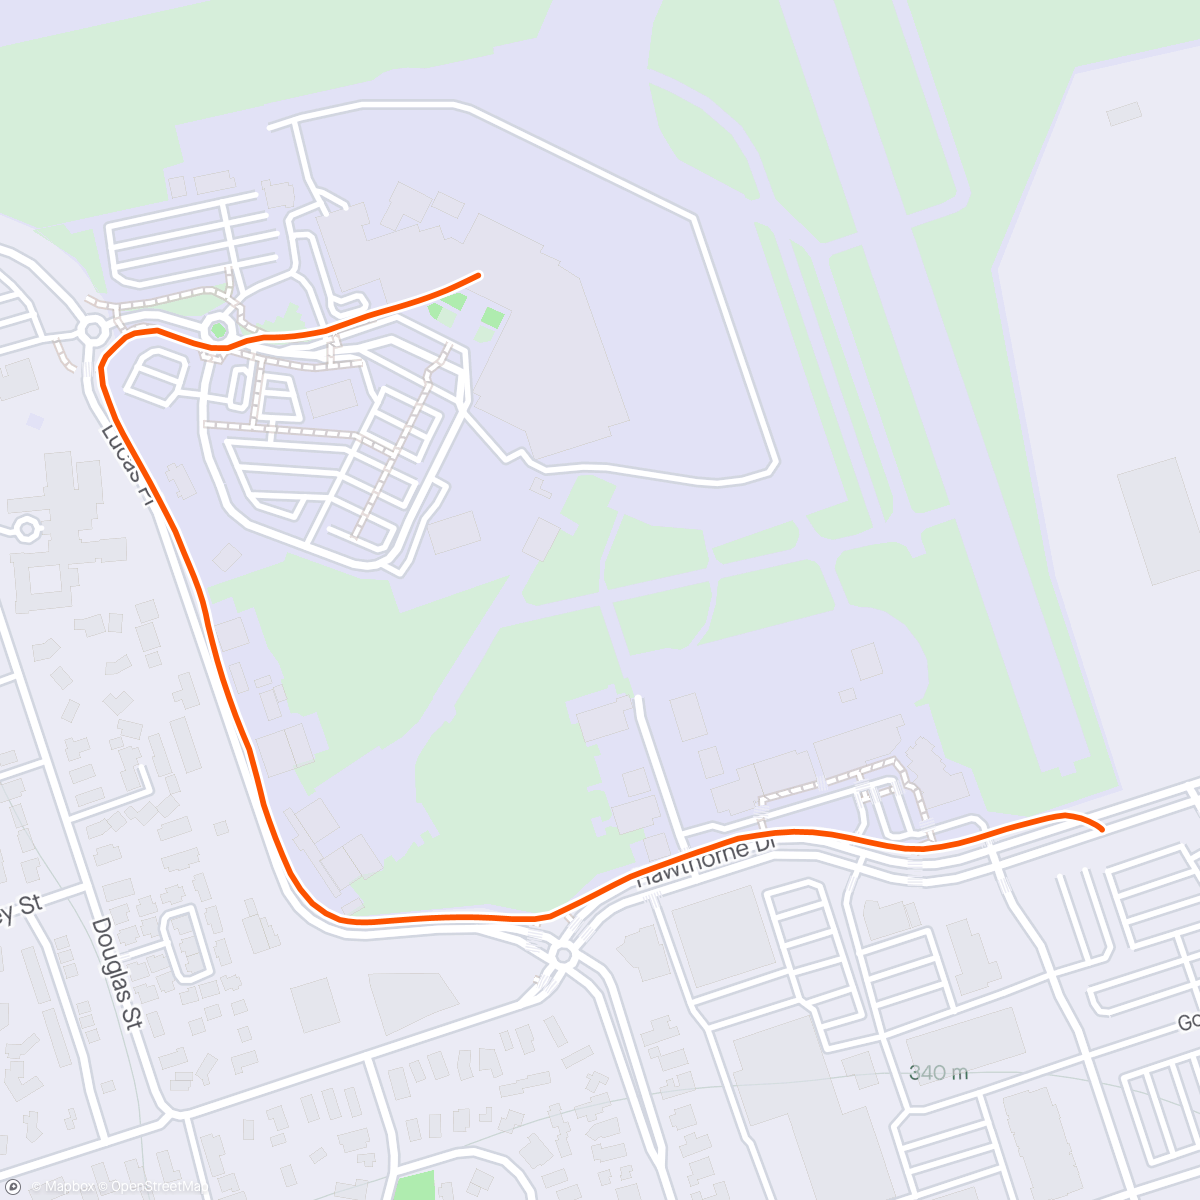 アクティビティ「Morning Walk / jog from carpark」の地図